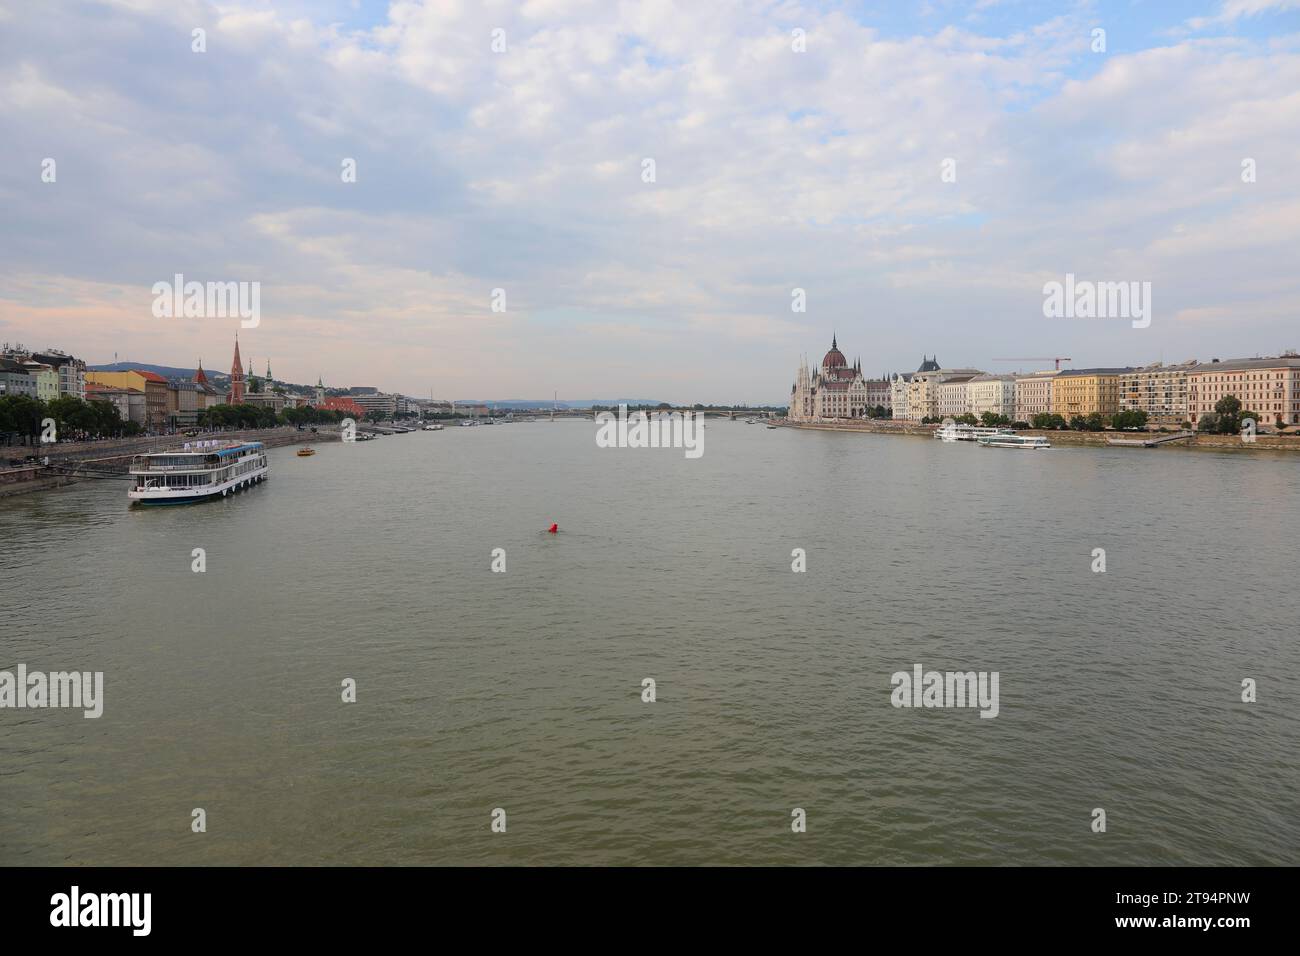 Ampio panorama del fiume Danubio con una barca per trasportare i turisti nella città di Budapest, capitale dell'Ungheria Foto Stock